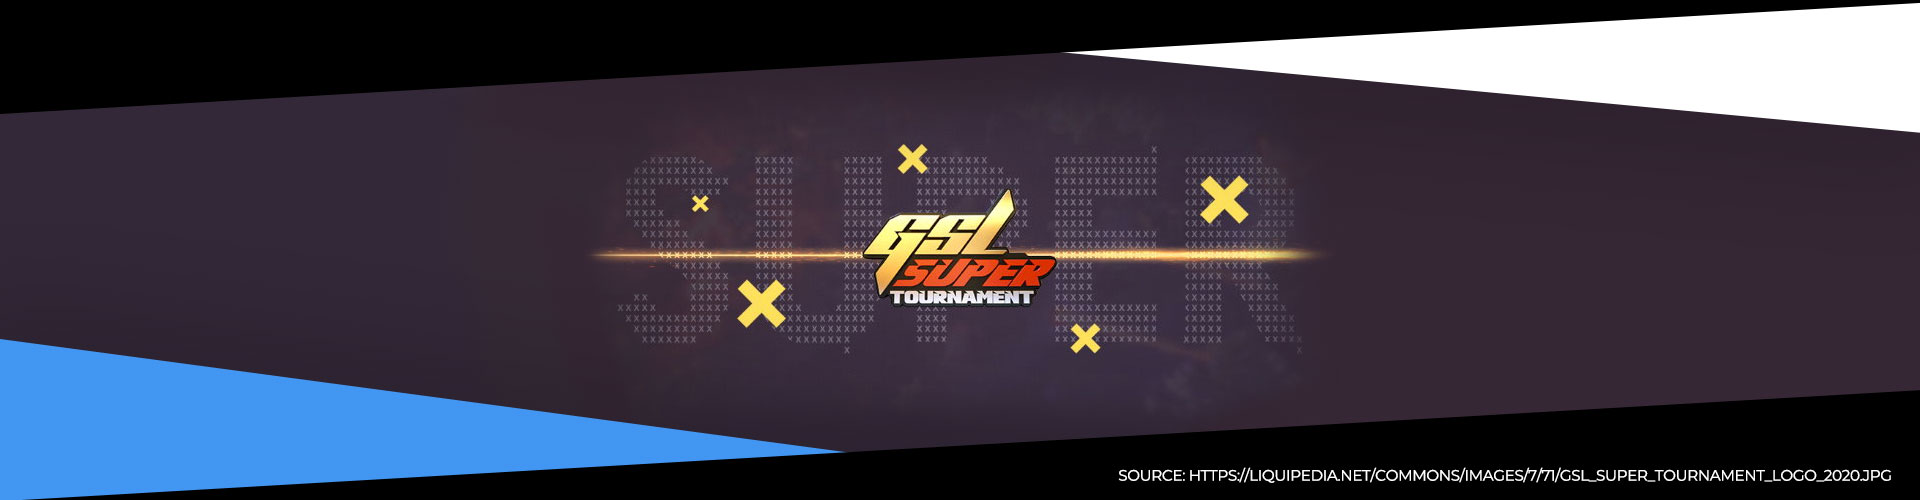 2020 GSL Super Tournament 1